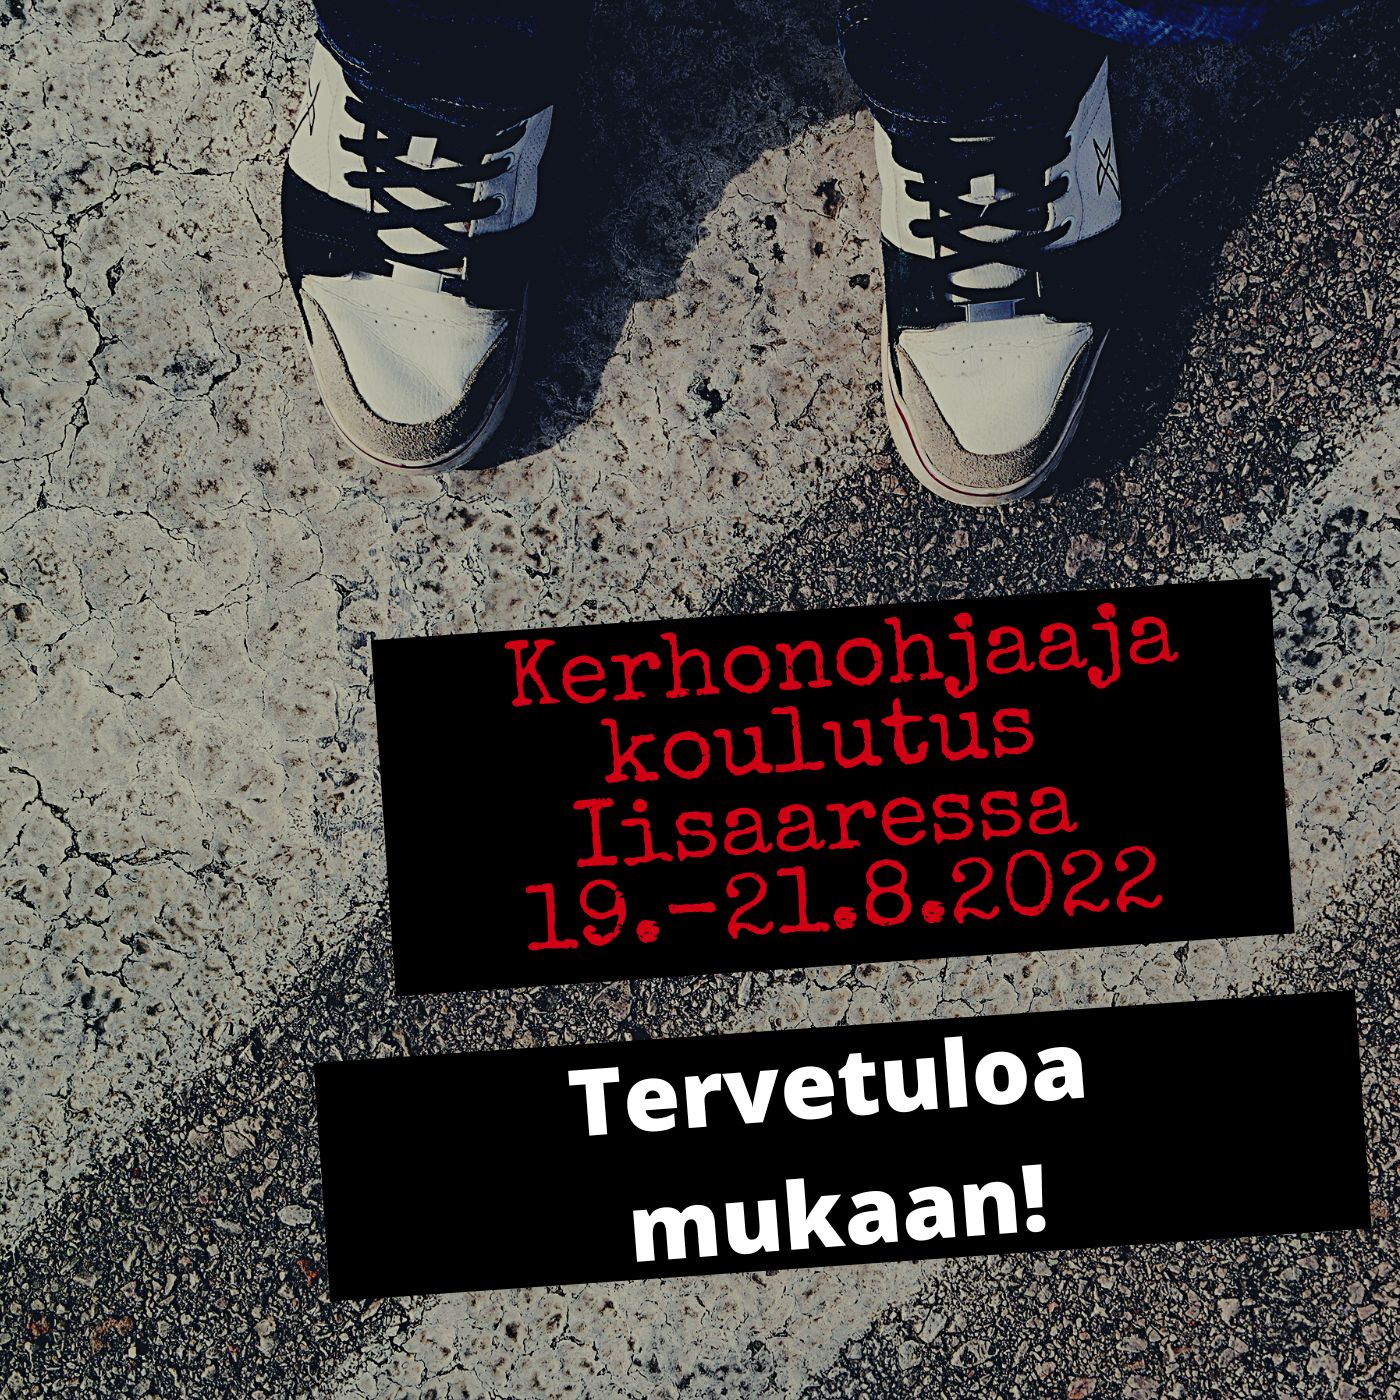 kuvassa kengät ja teksti kerhonohjaaja koulutus Iisaaressa 19.-21.8.2022. Tervetuloa mukaan!